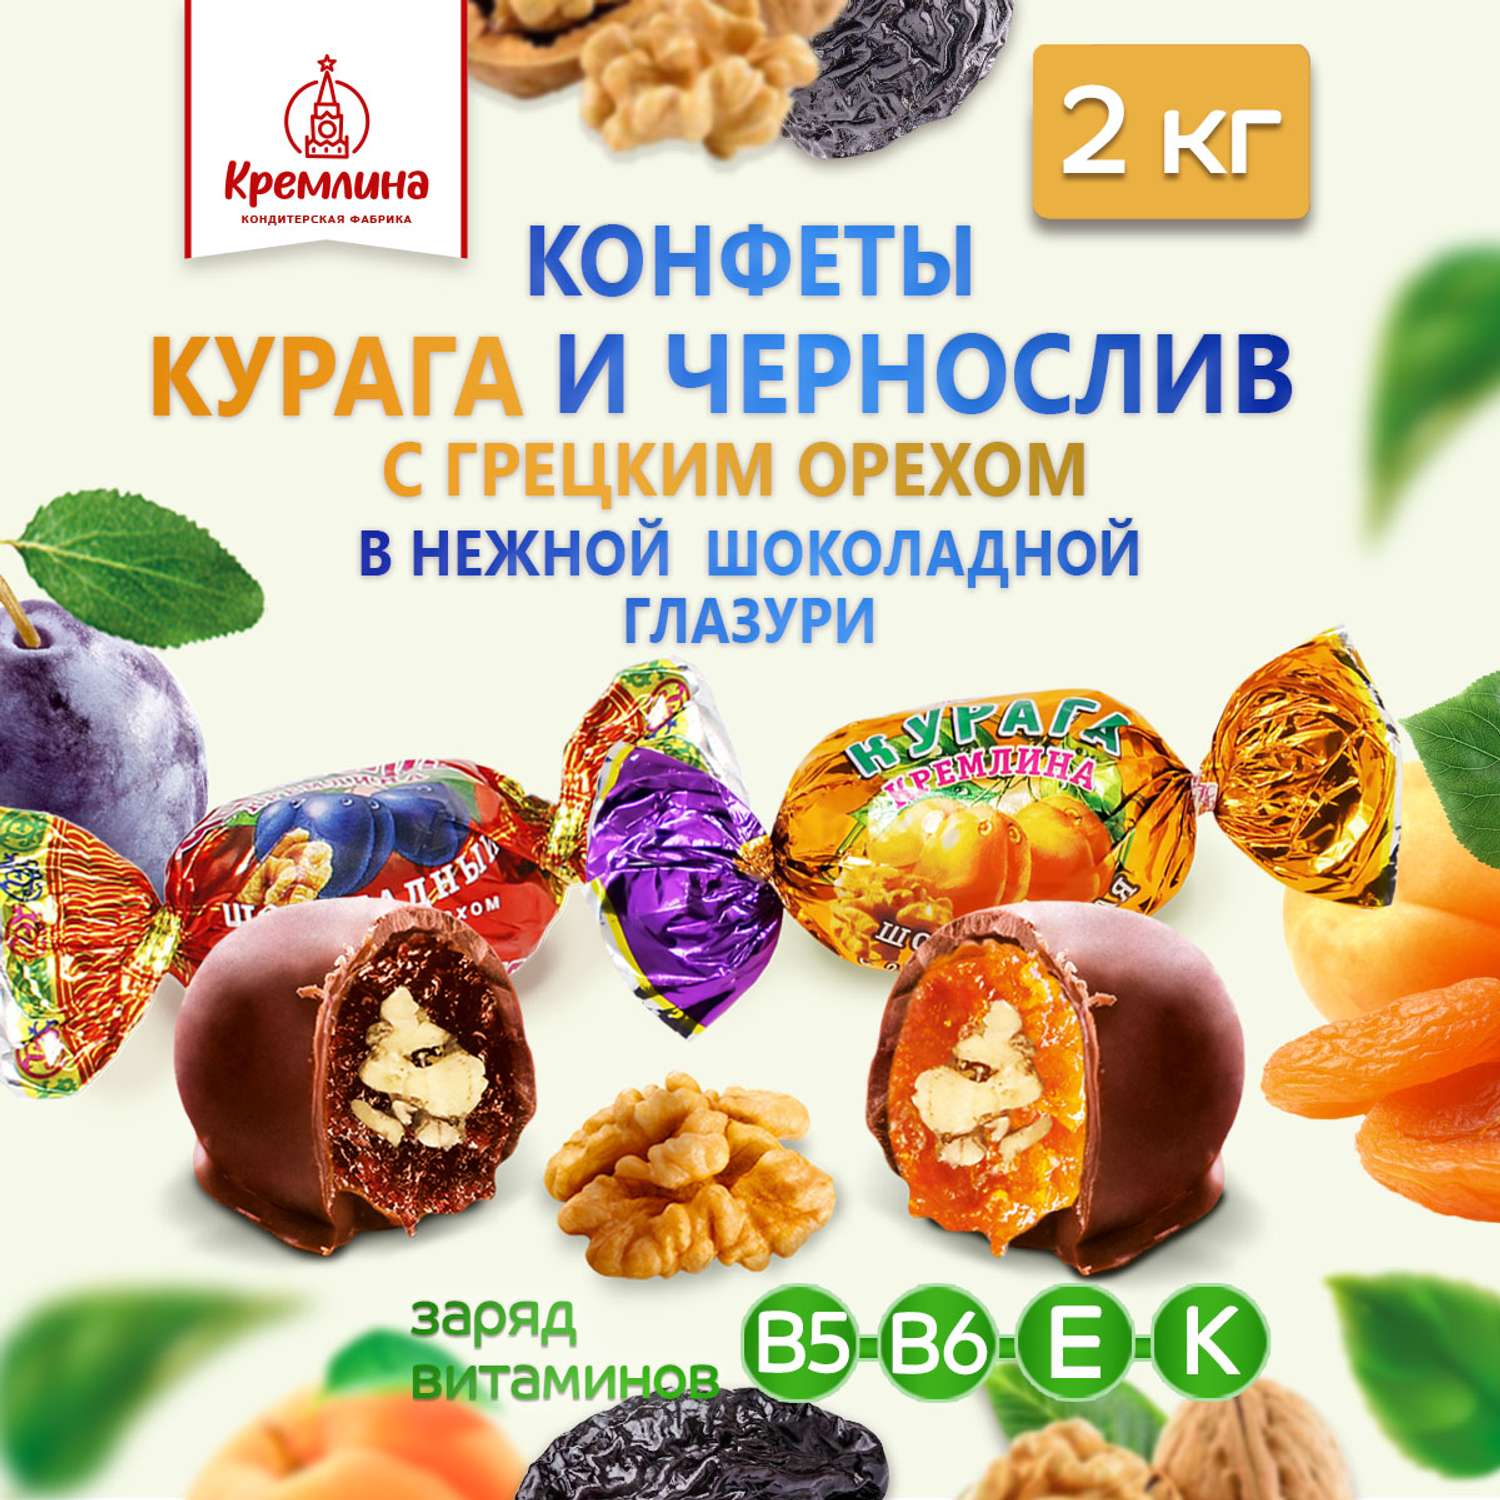 Конфеты курага и чернослив Кремлина в глазури с грецким орехом короб 2 кг - фото 1